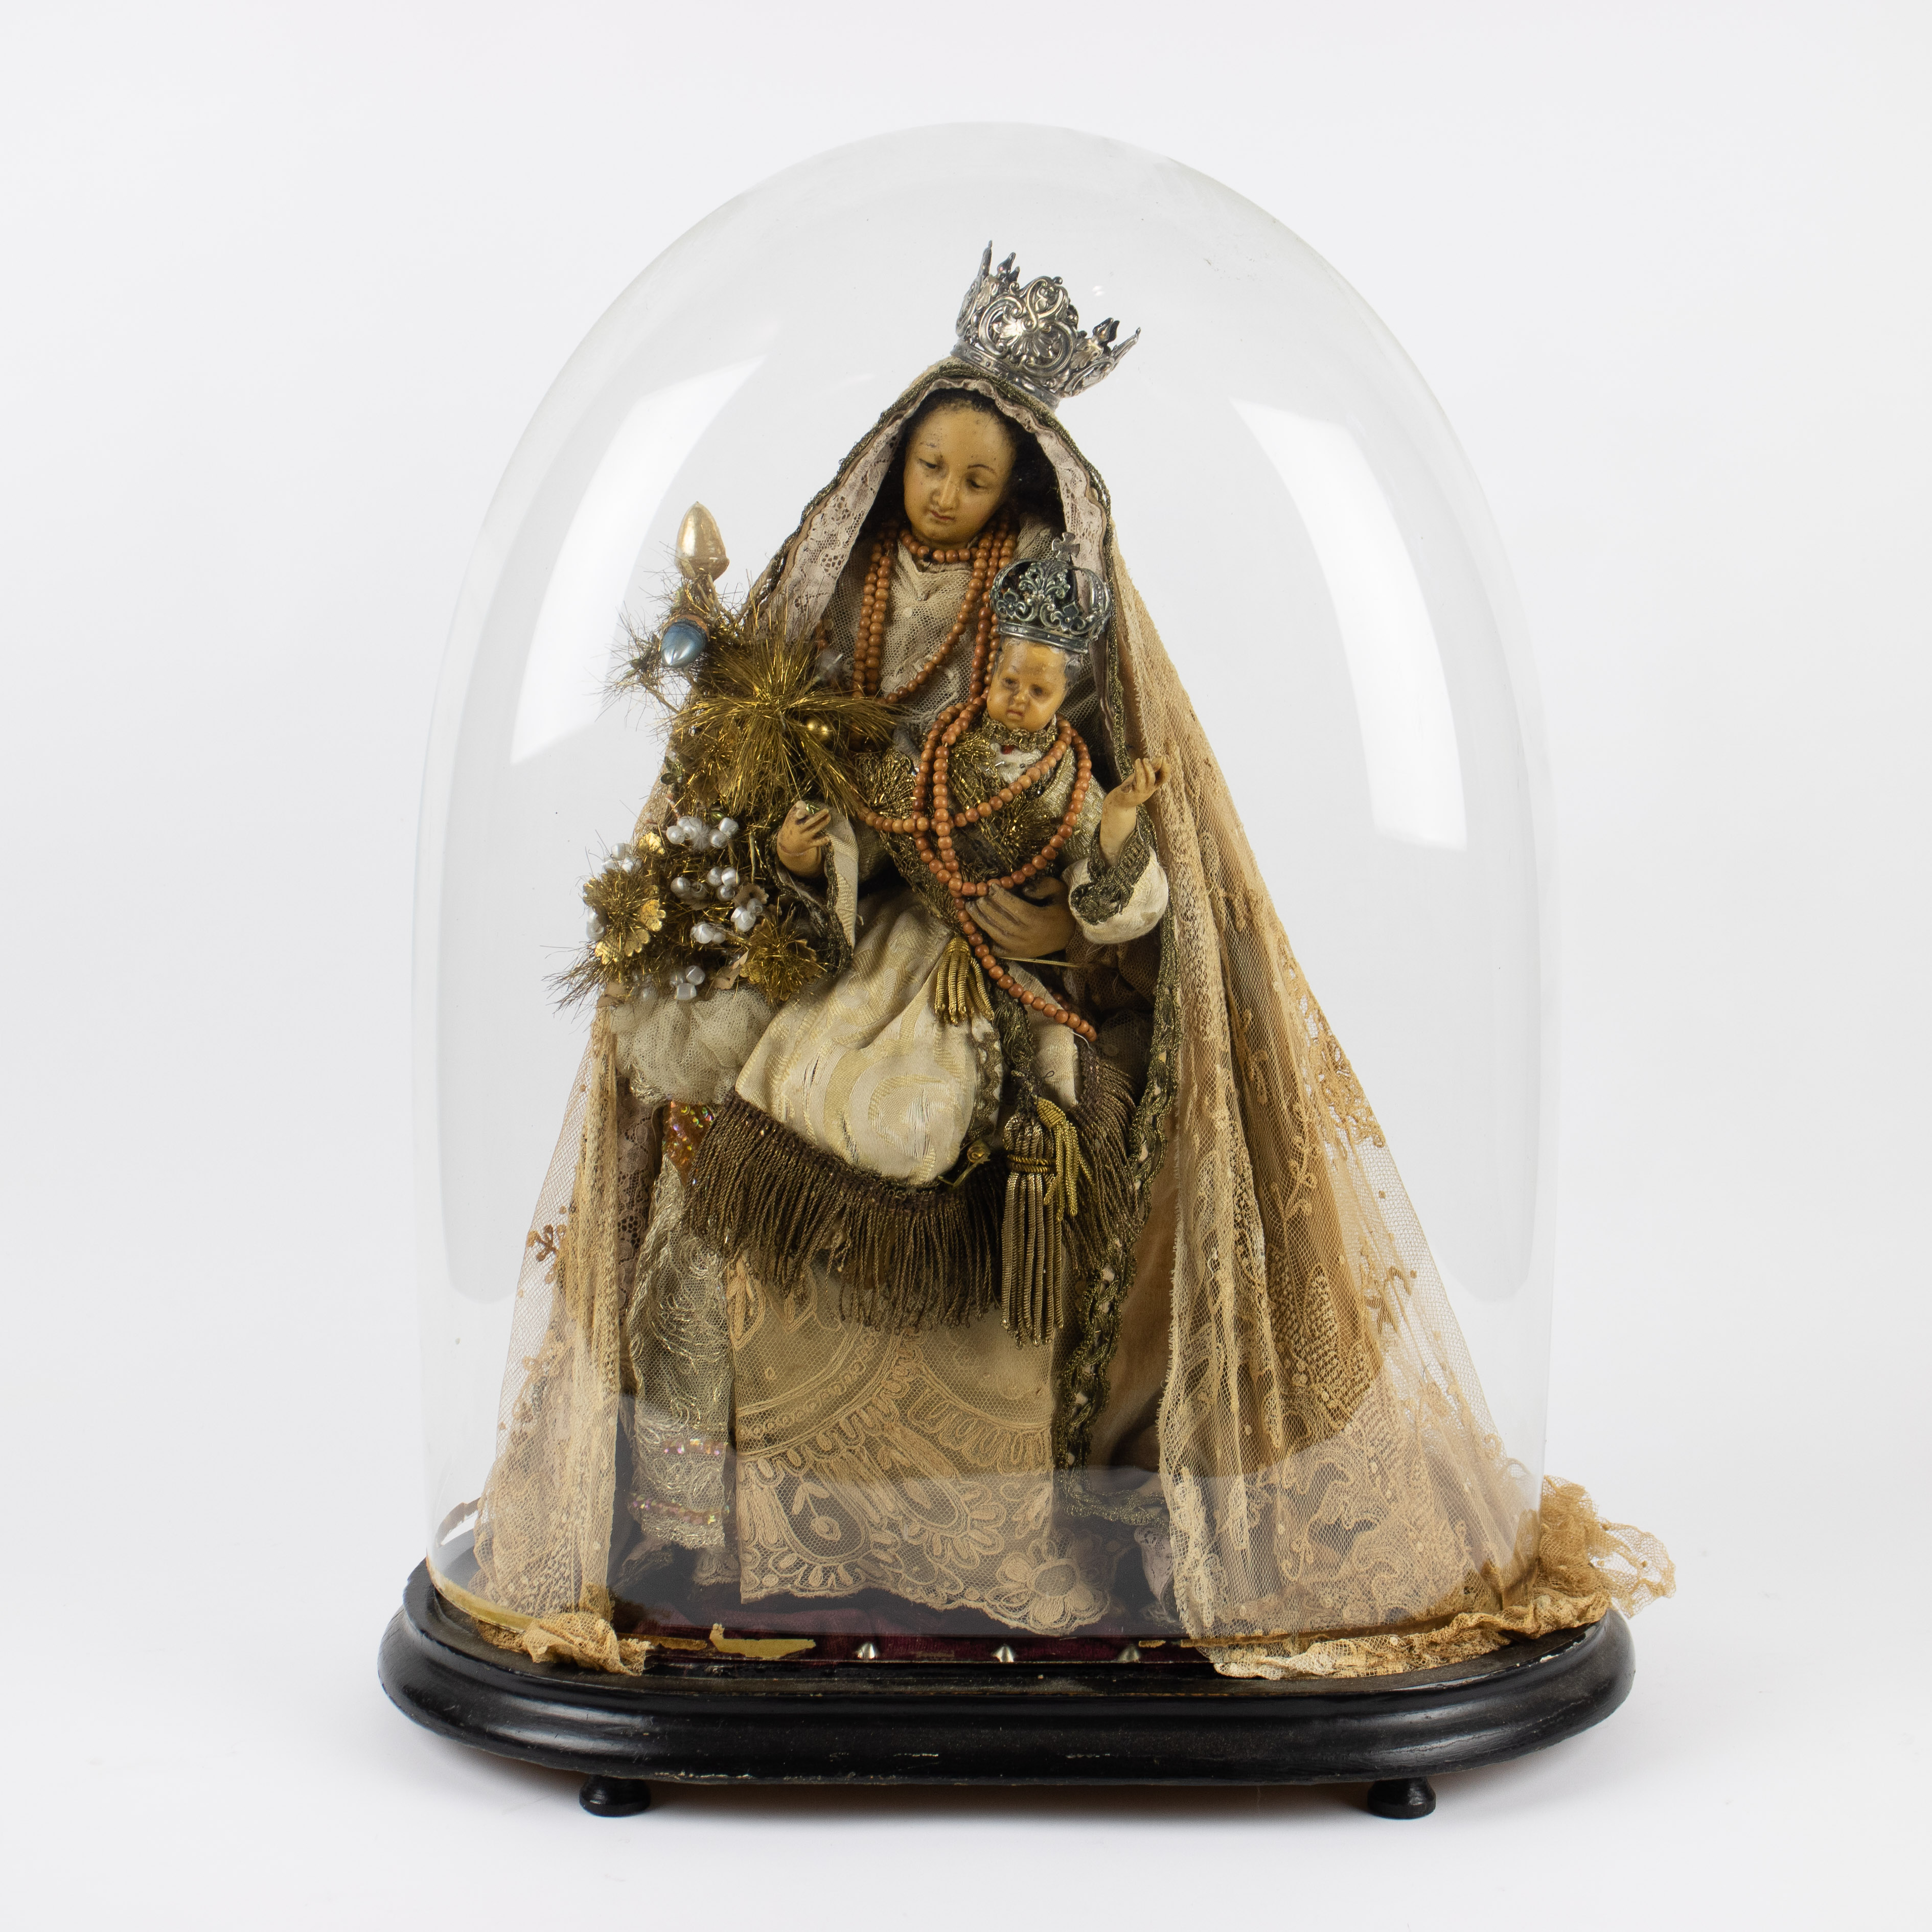 Madonna under glass bell jar, 19th century